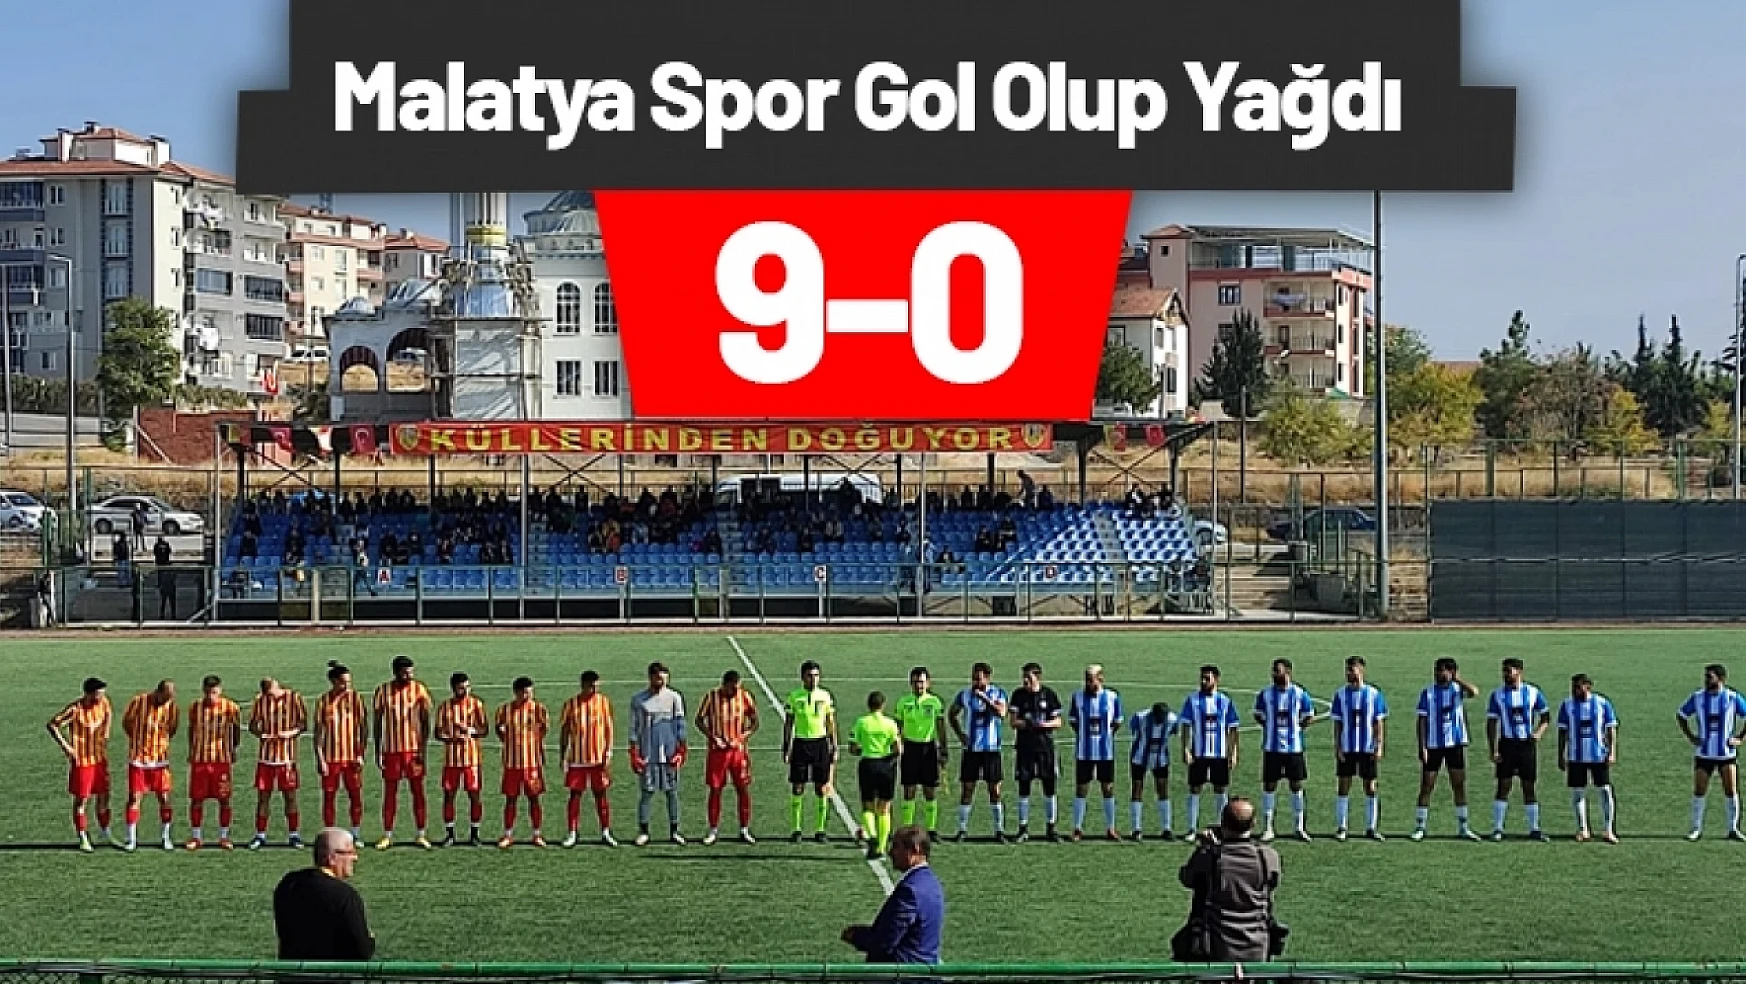 Malatyaspor gol olup yağdı 9-0